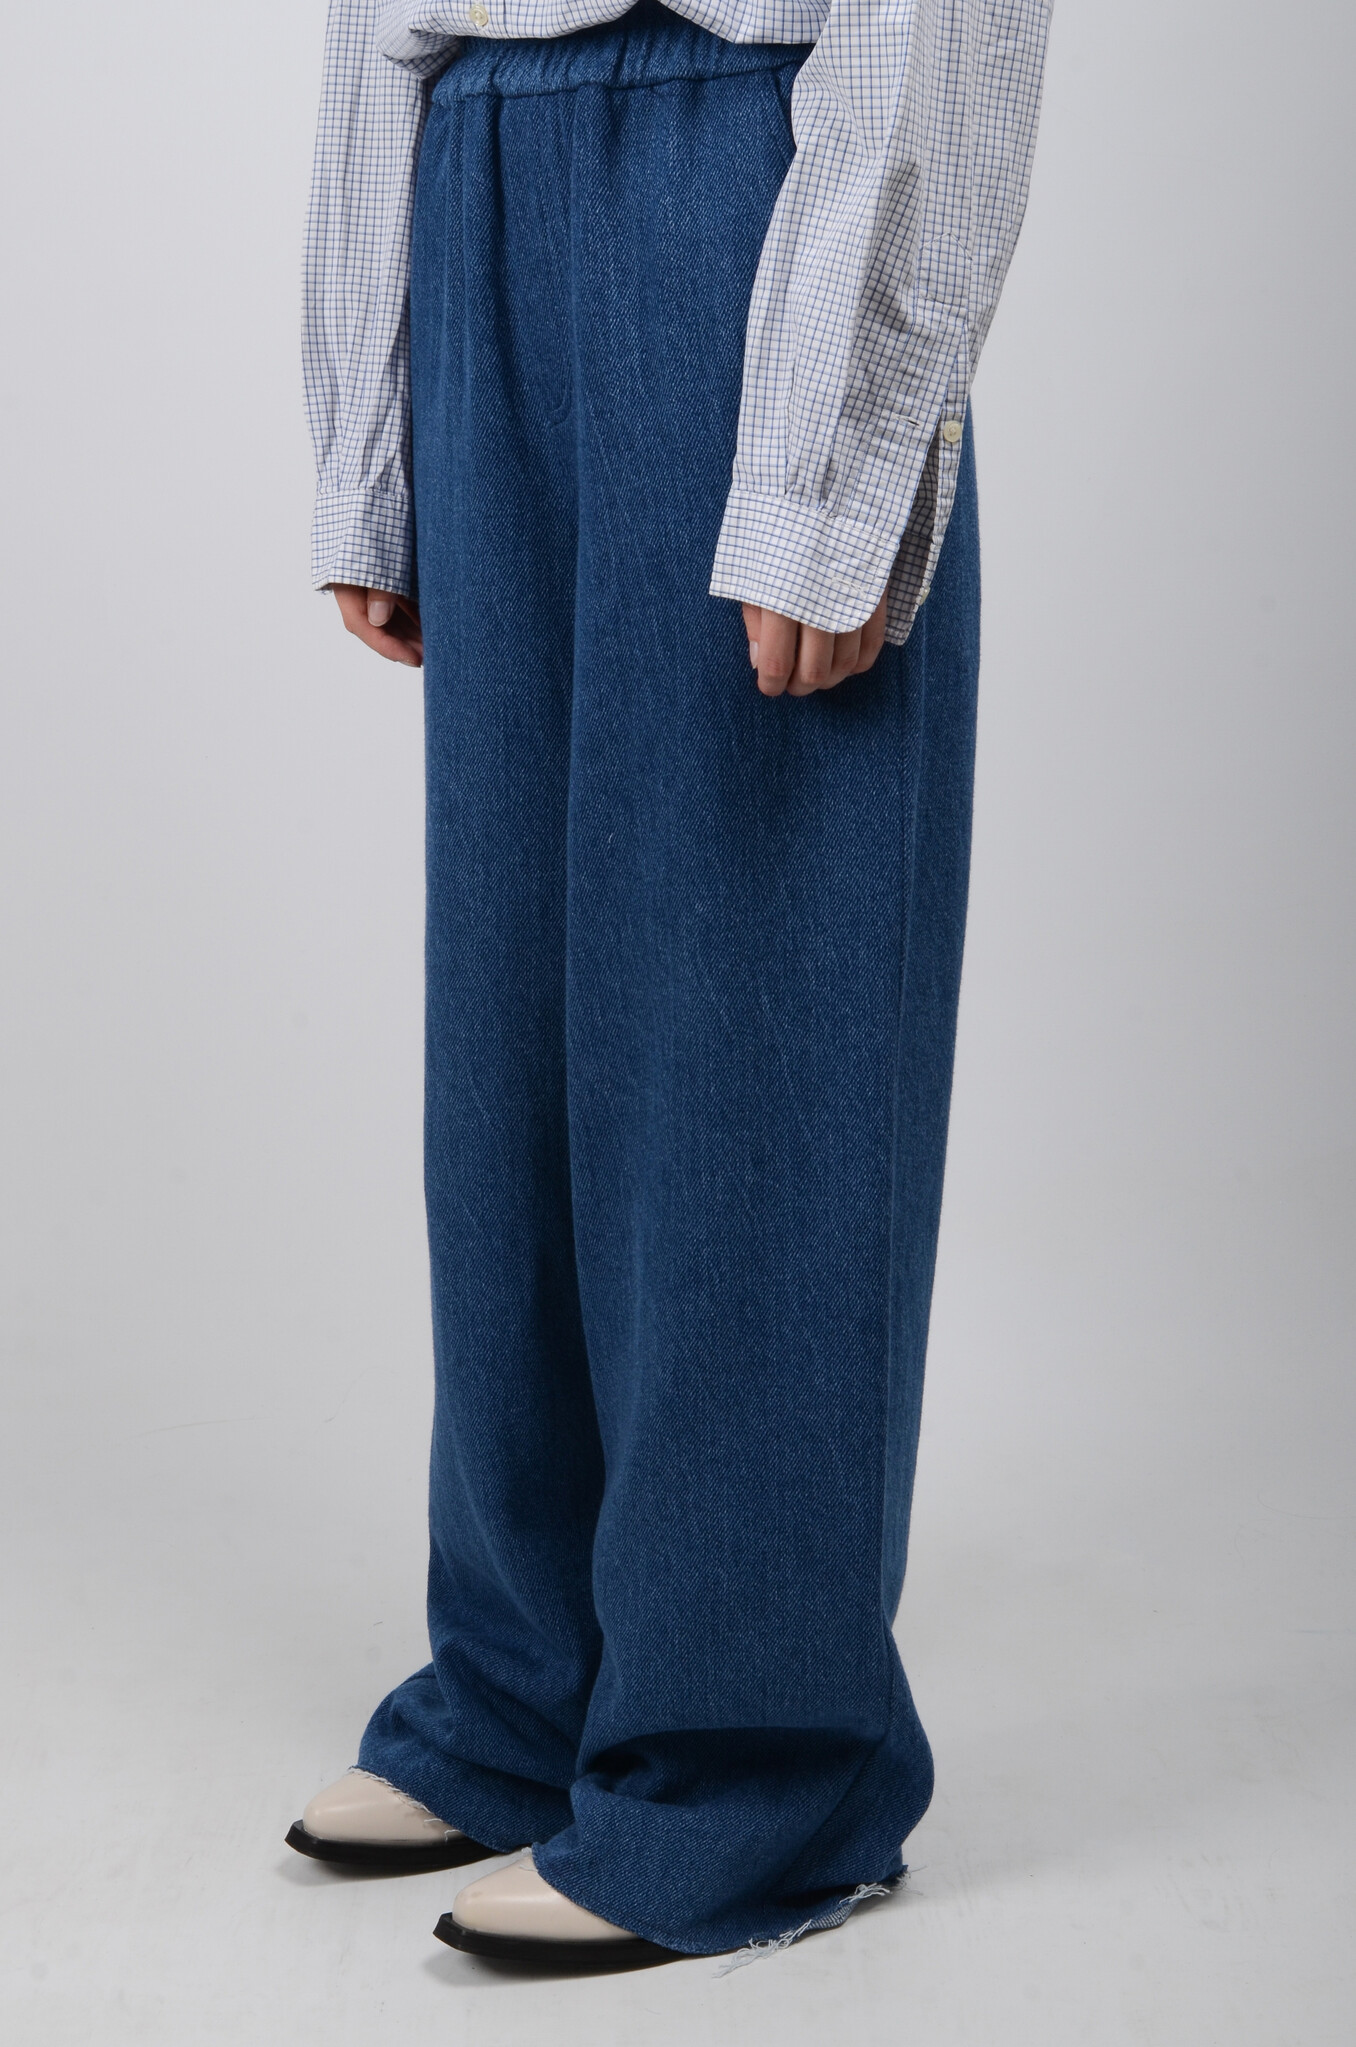 Façonnable Faconnable Jeans Size 12 Womens Blue Denim Pants